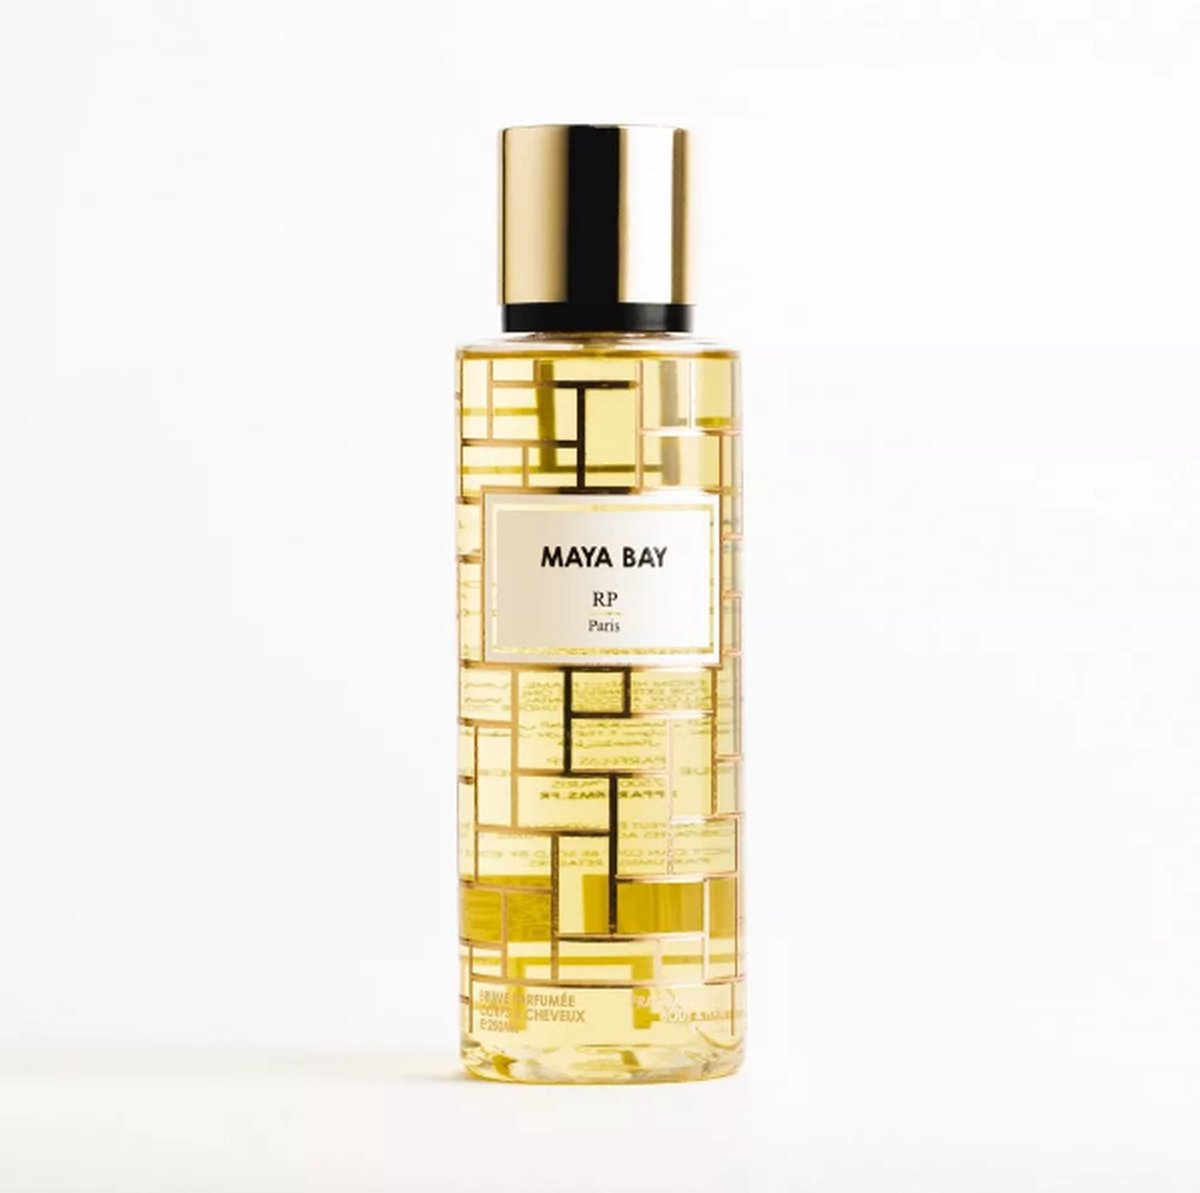 Maya Bay - bodymist & haarmist - RP Paris - RP Parfum